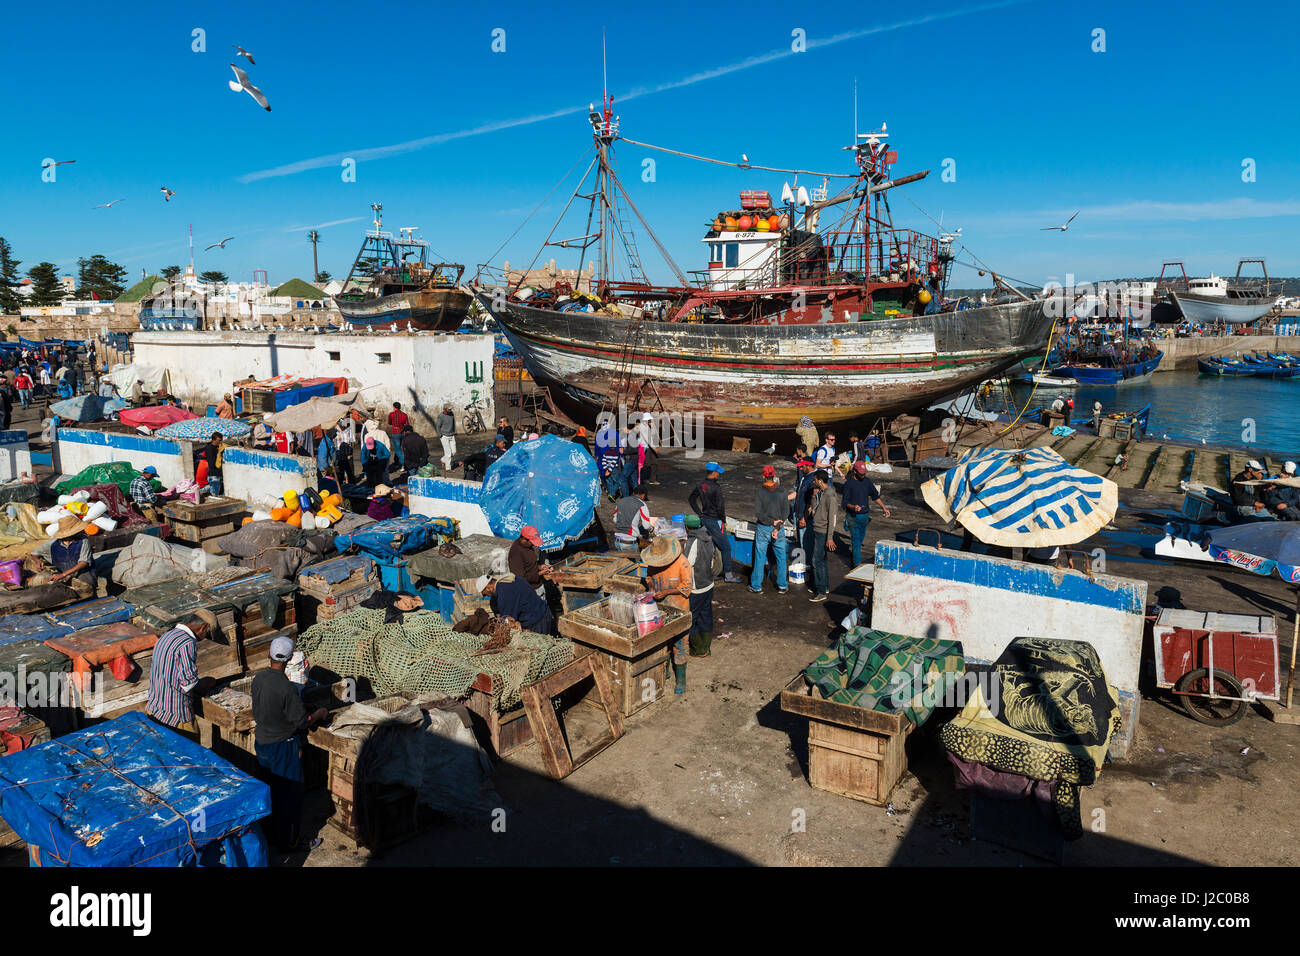 Essaouira, Marocco - 15 Aprile 2015: Persone nel porto di pesca della Medina di Essaouira nella costa atlantica del Marocco, Africa settentrionale. Foto Stock